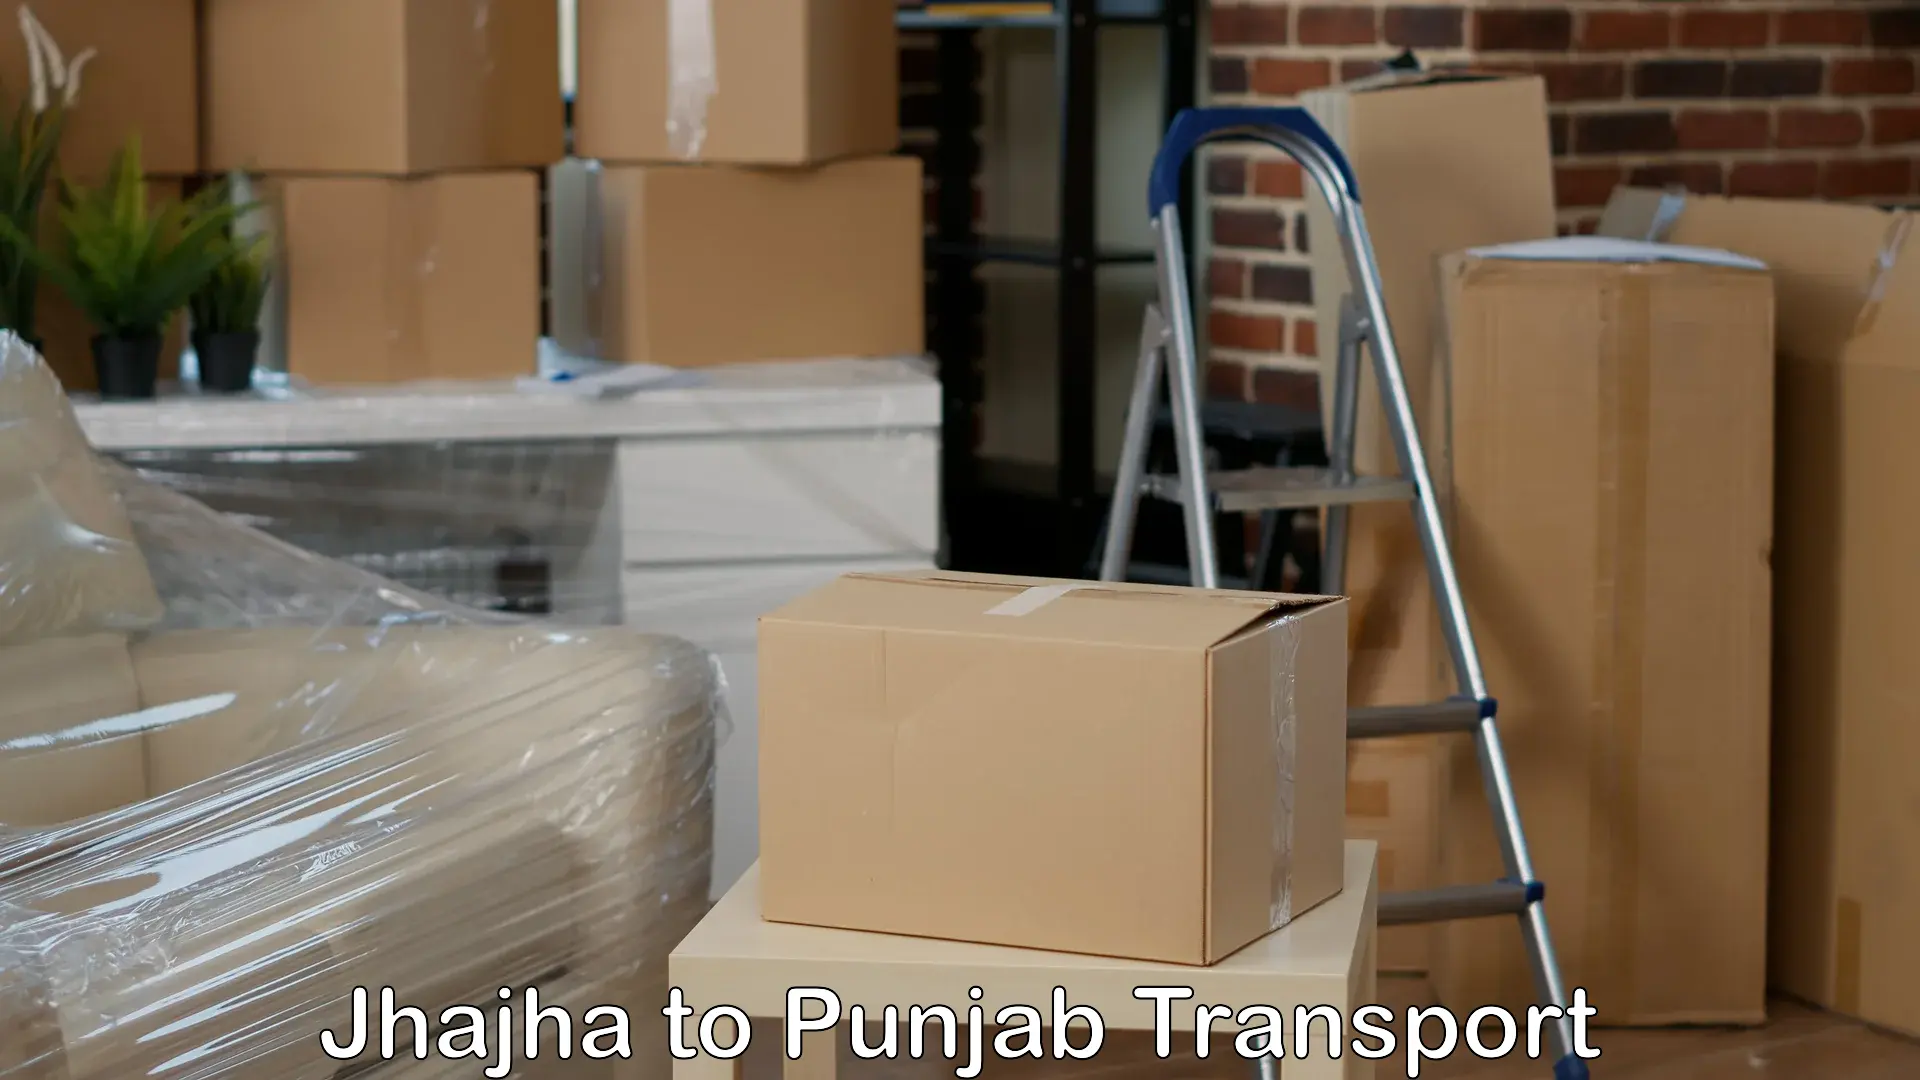 Nearby transport service Jhajha to Punjab